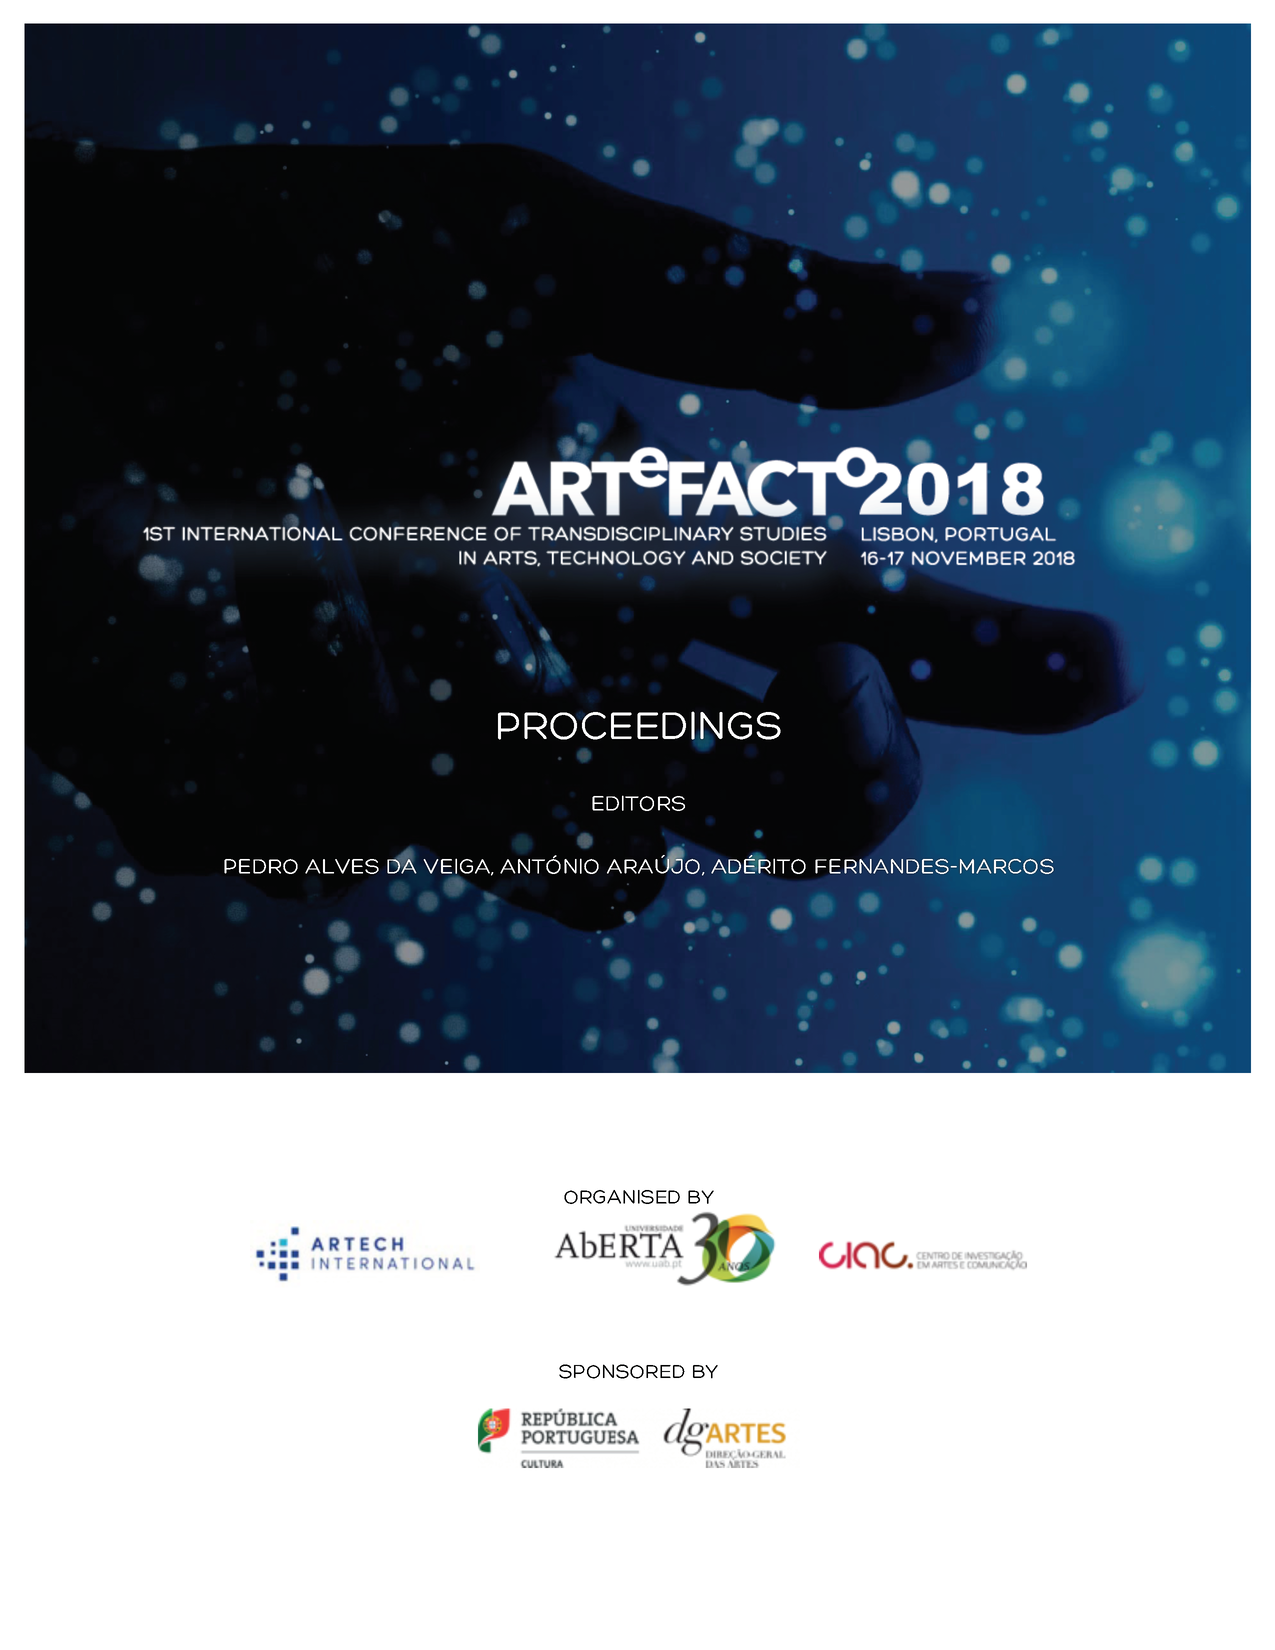 Imagen de portada del libro ARTeFACTo 2018